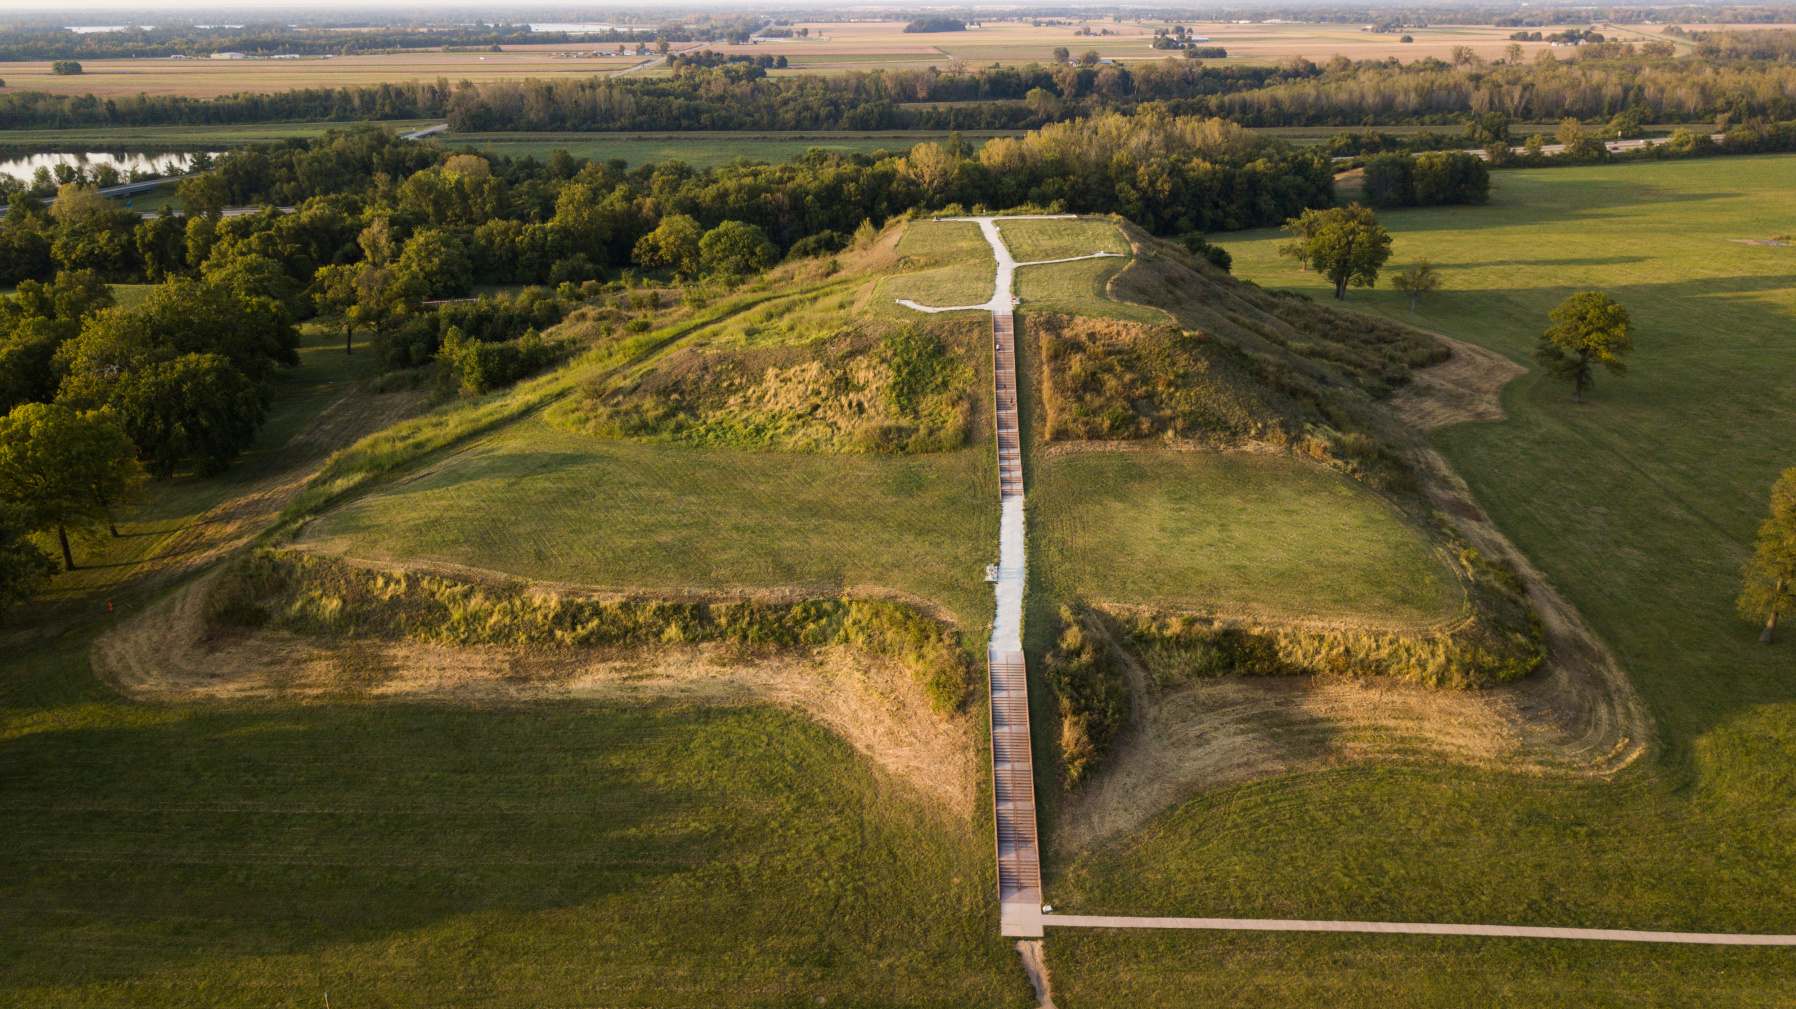 Monks Mound, sagrađen između 950. i 1100. godine n. e. i smješten na mjestu svjetske baštine UNESCO-a Cahokia Mounds u blizini Collinsvillea, Illinois, najveći je pretkolumbovski zemljani nasip u Americi sjeverno od Mezoamerike. Brojne pretkolumbovske kulture zajednički se nazivaju "Graditelji humaka".